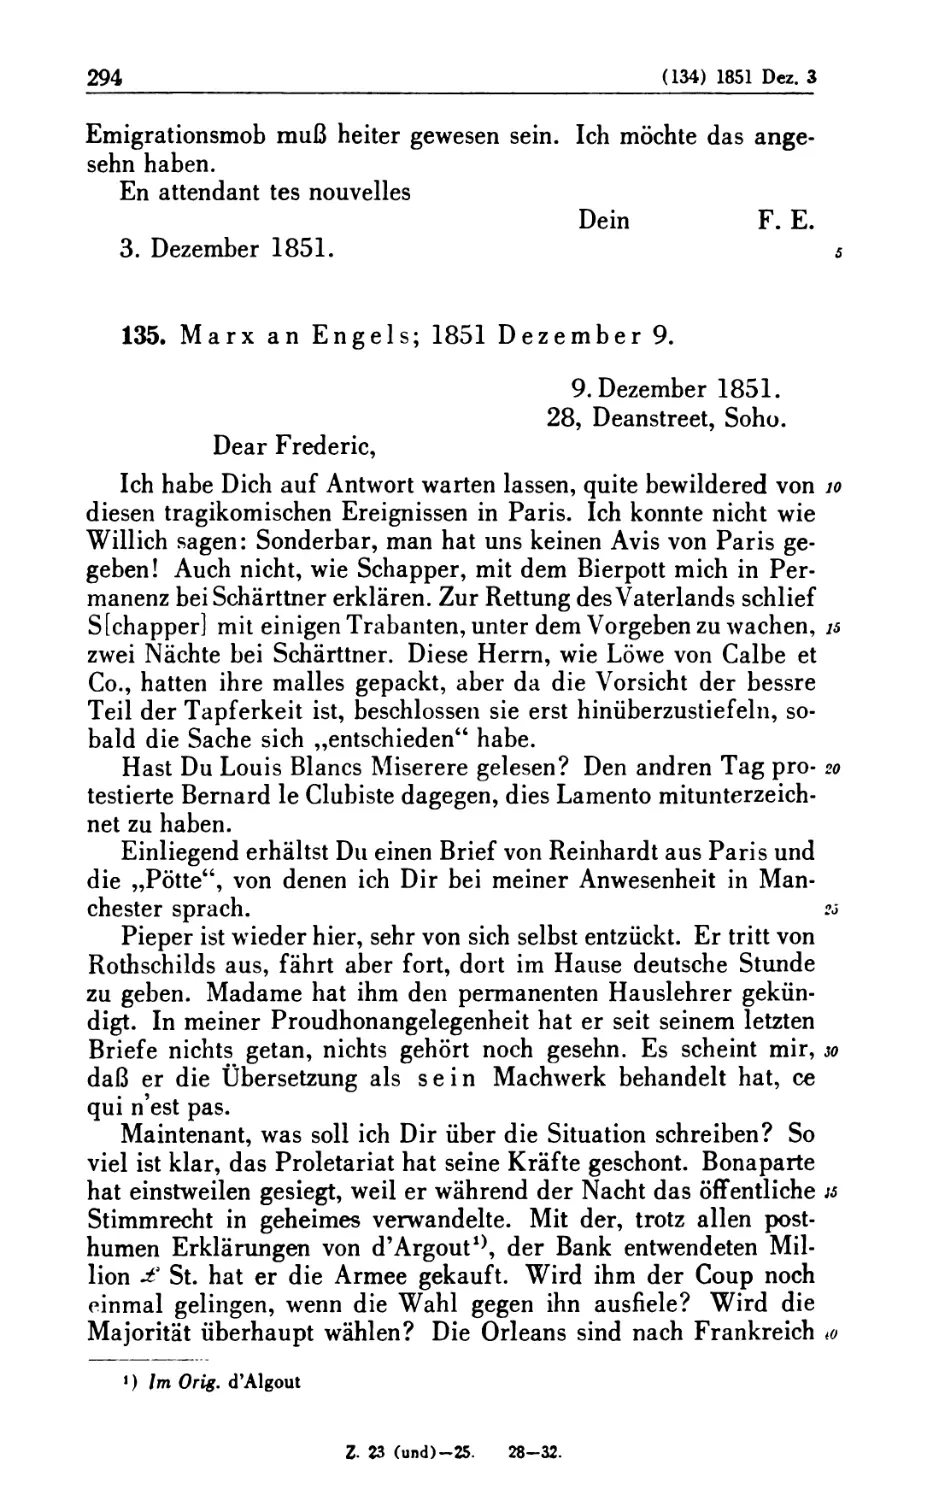 135. Marx an Engels; 1851 Dezember 9